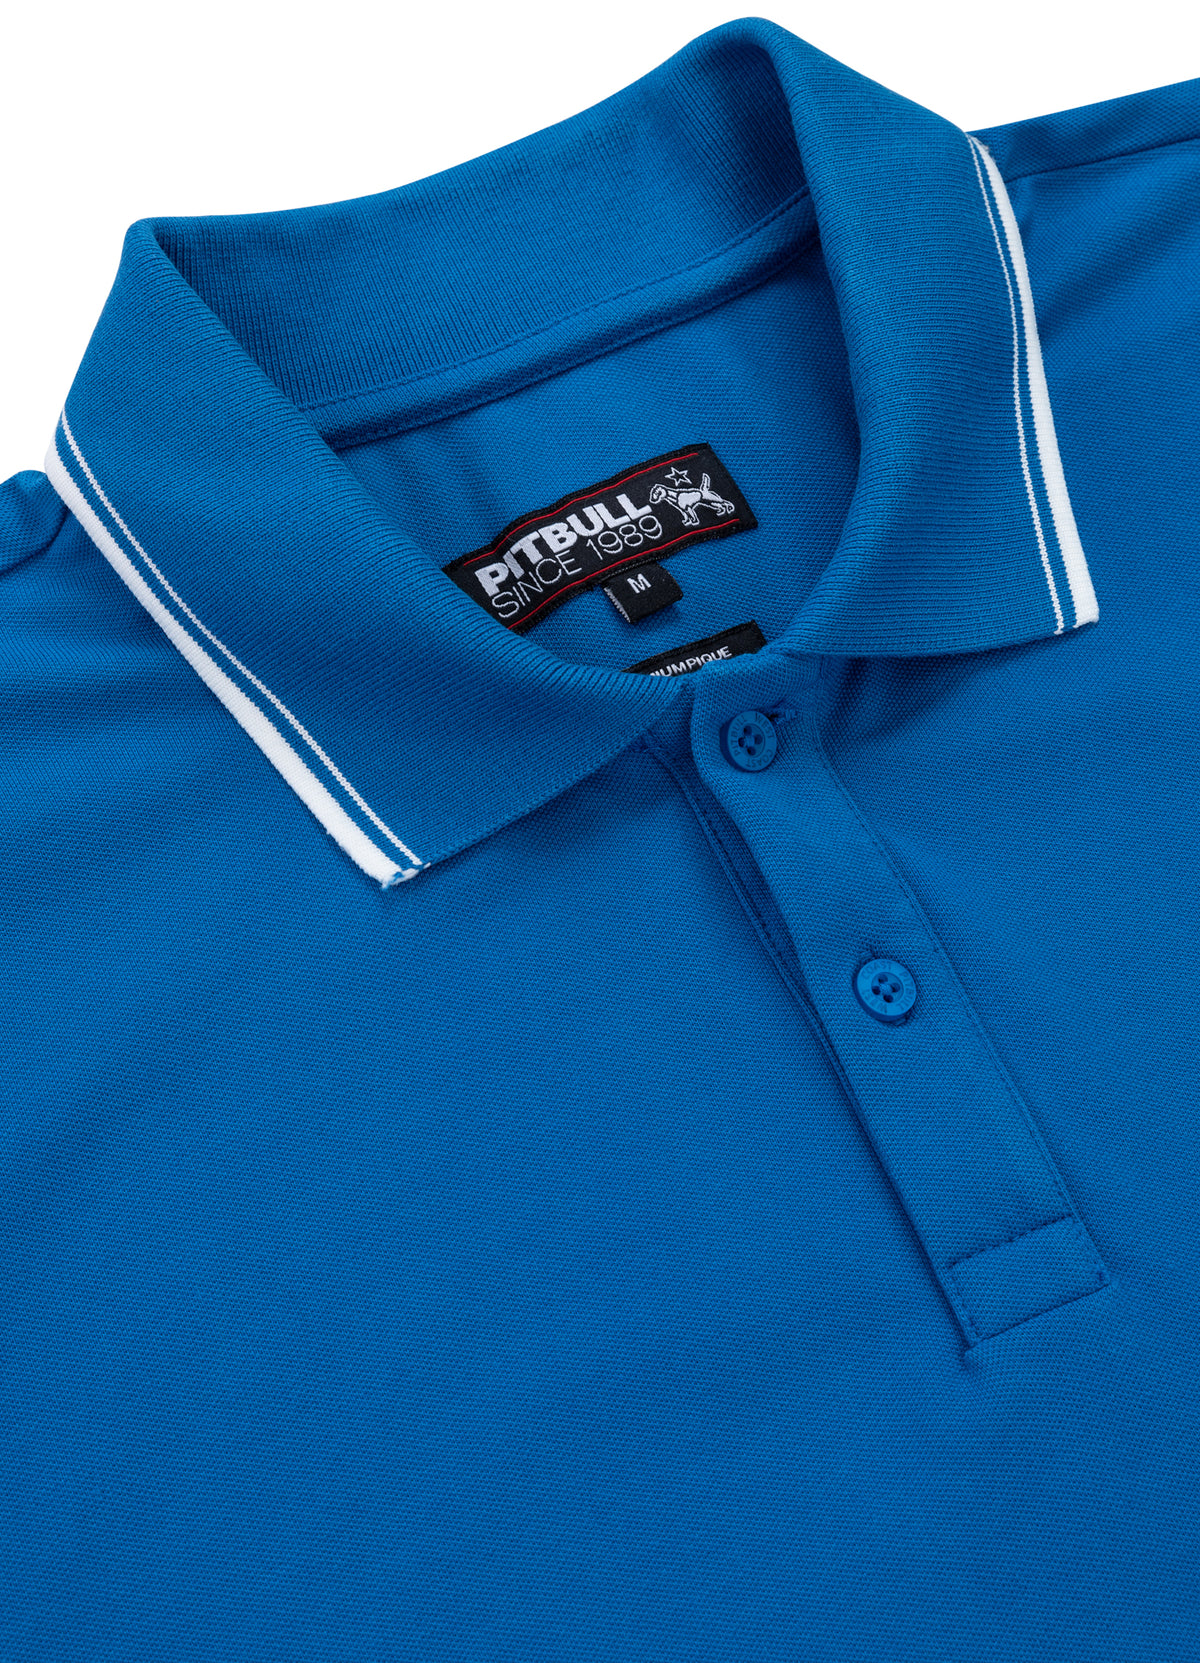 PIQUE STRIPES REGULAR Blue Polo T-shirt